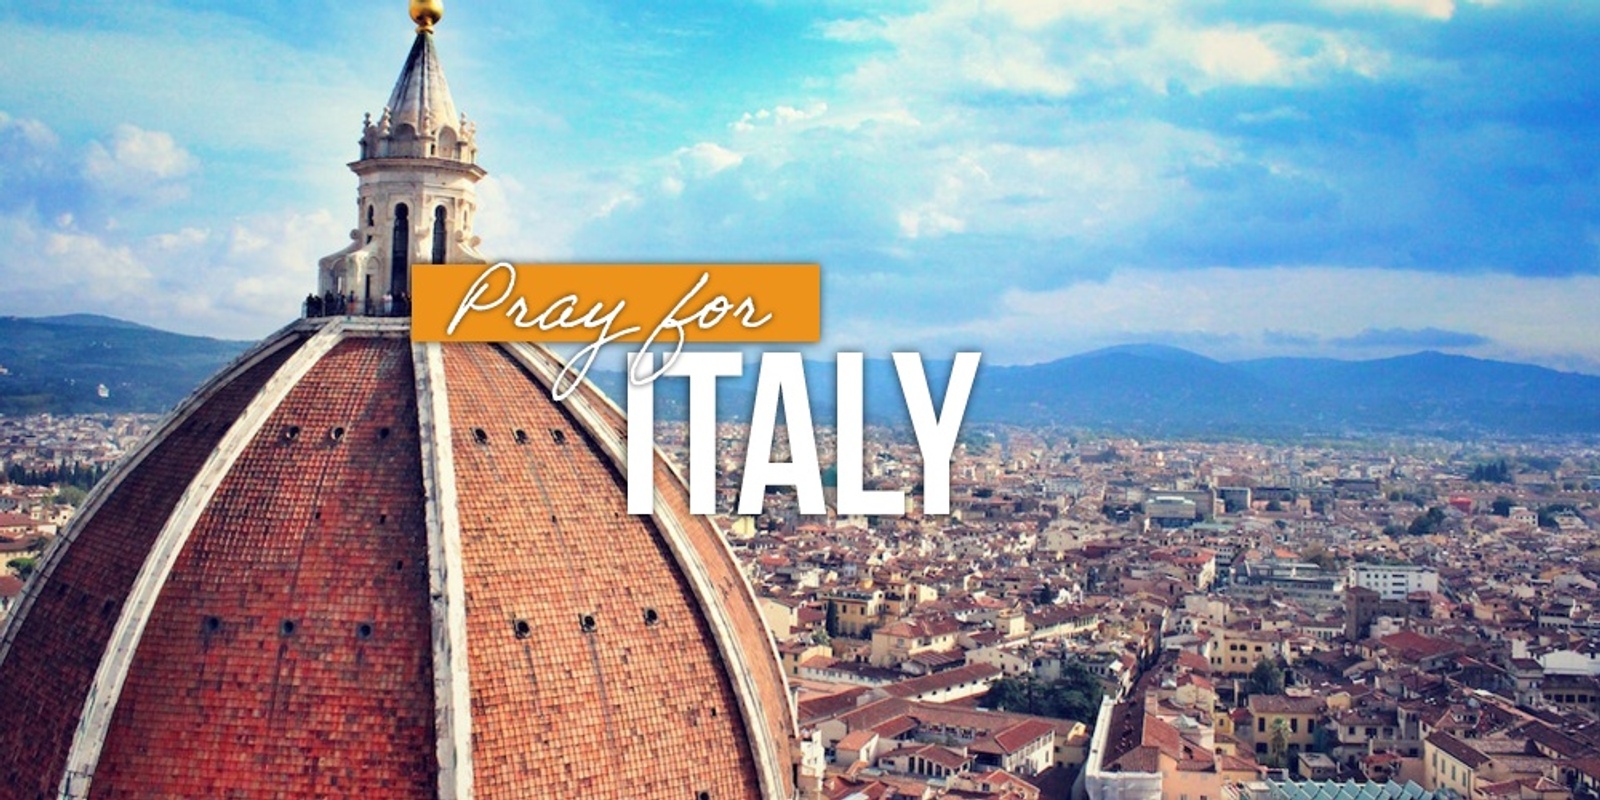 Pray for Italy